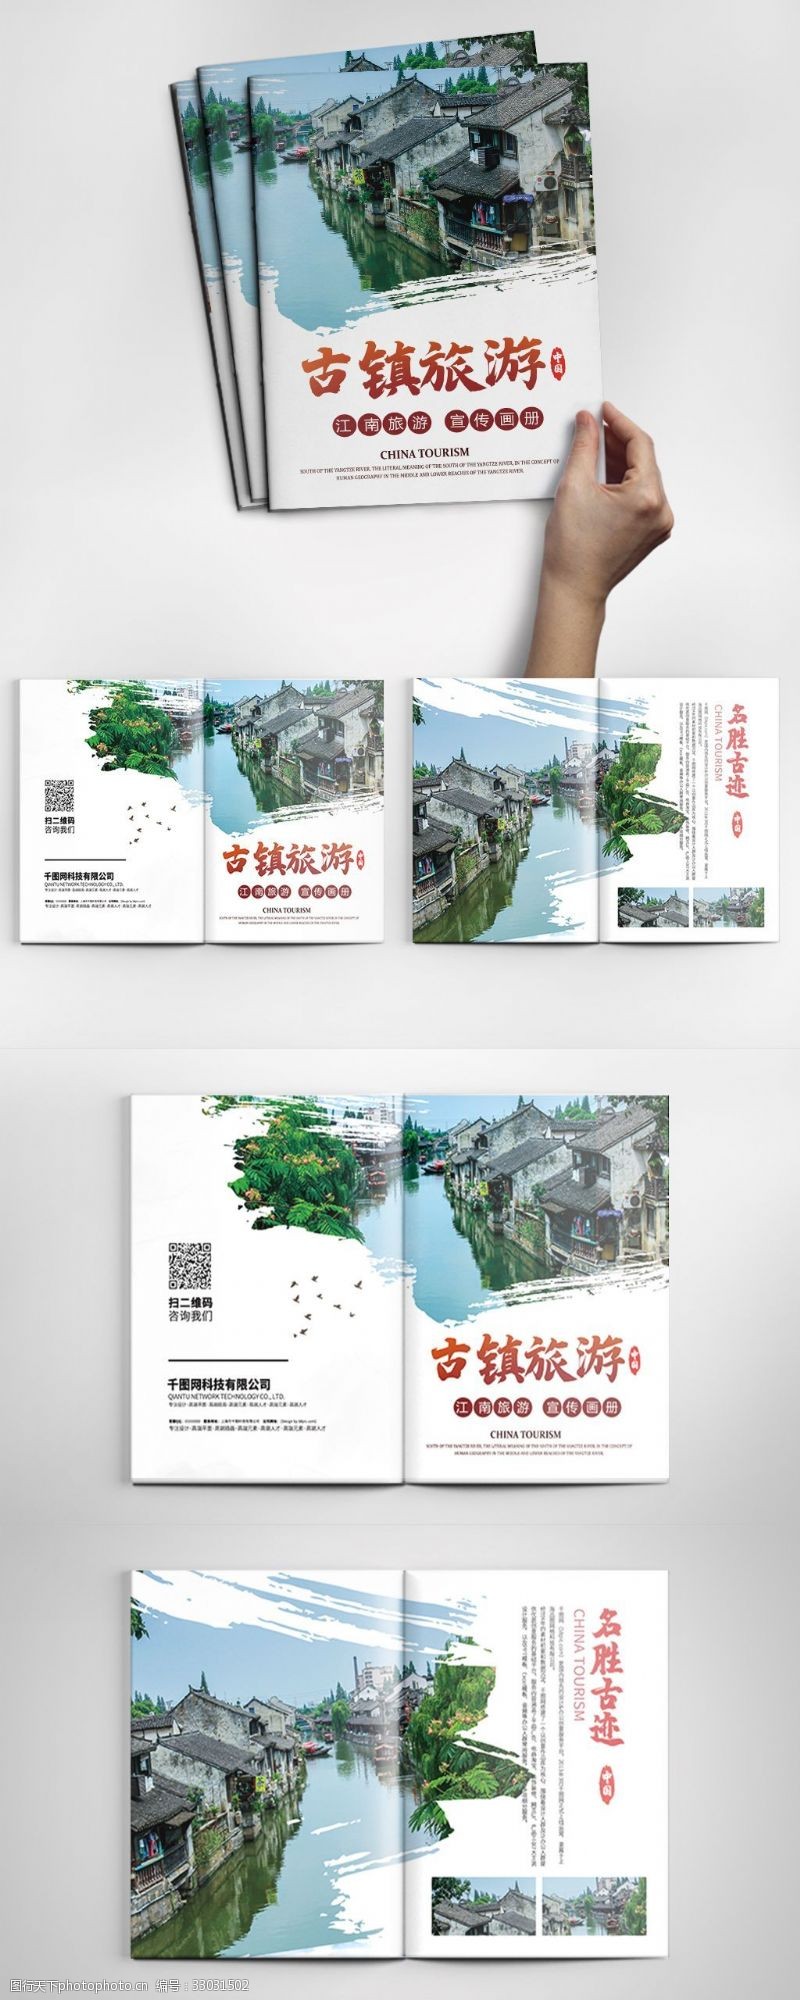 封套模板下载中国风古镇旅游宣传整套画册